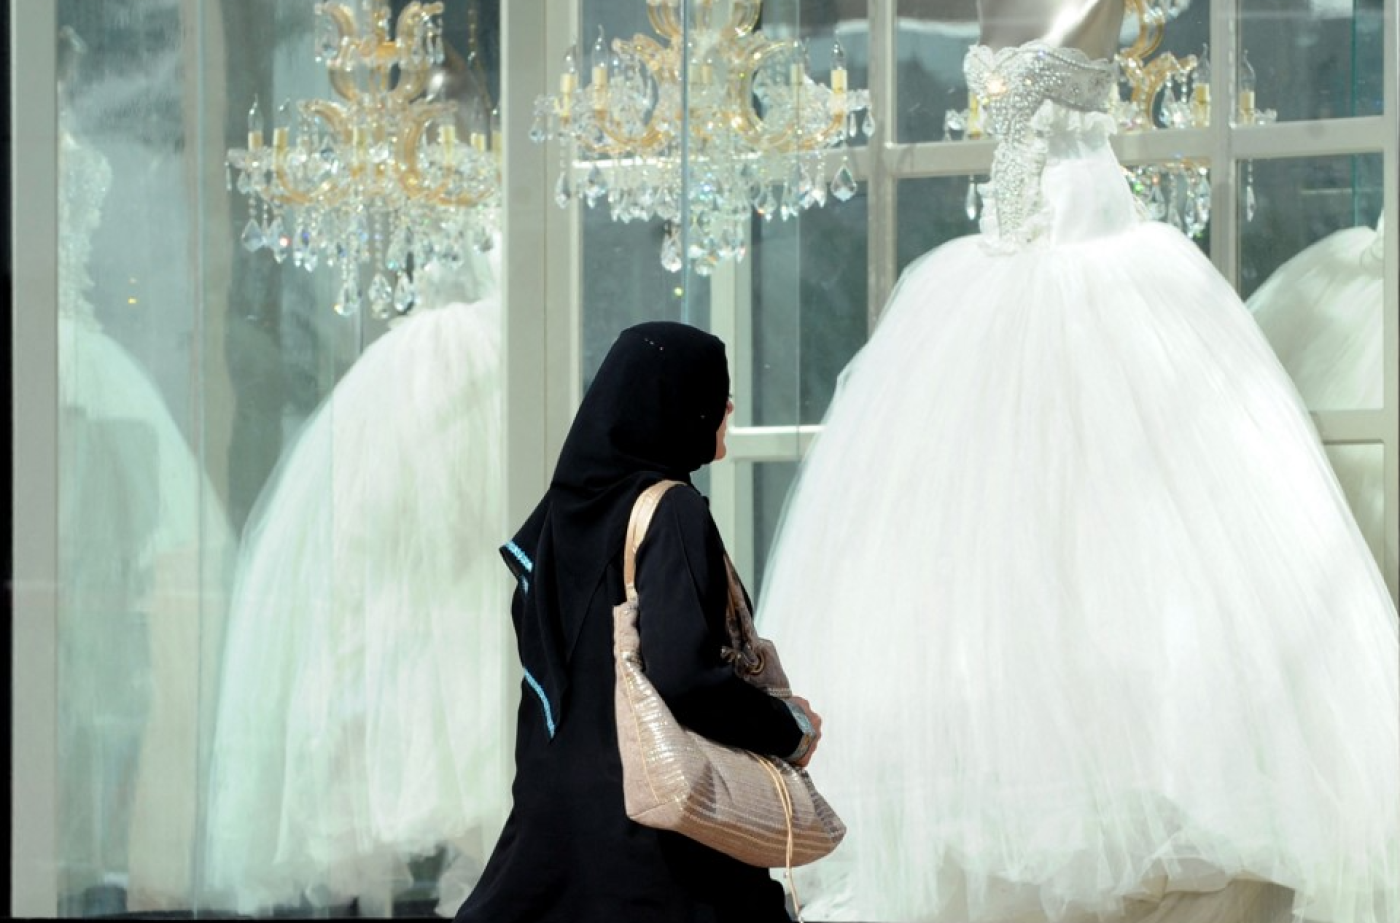 La procédure de demande de divorce, qui devient plus facile pour les femmes, expliquerait en partie cette forte augmentation des taux de divorce (AFP/Fayez Nureldine)